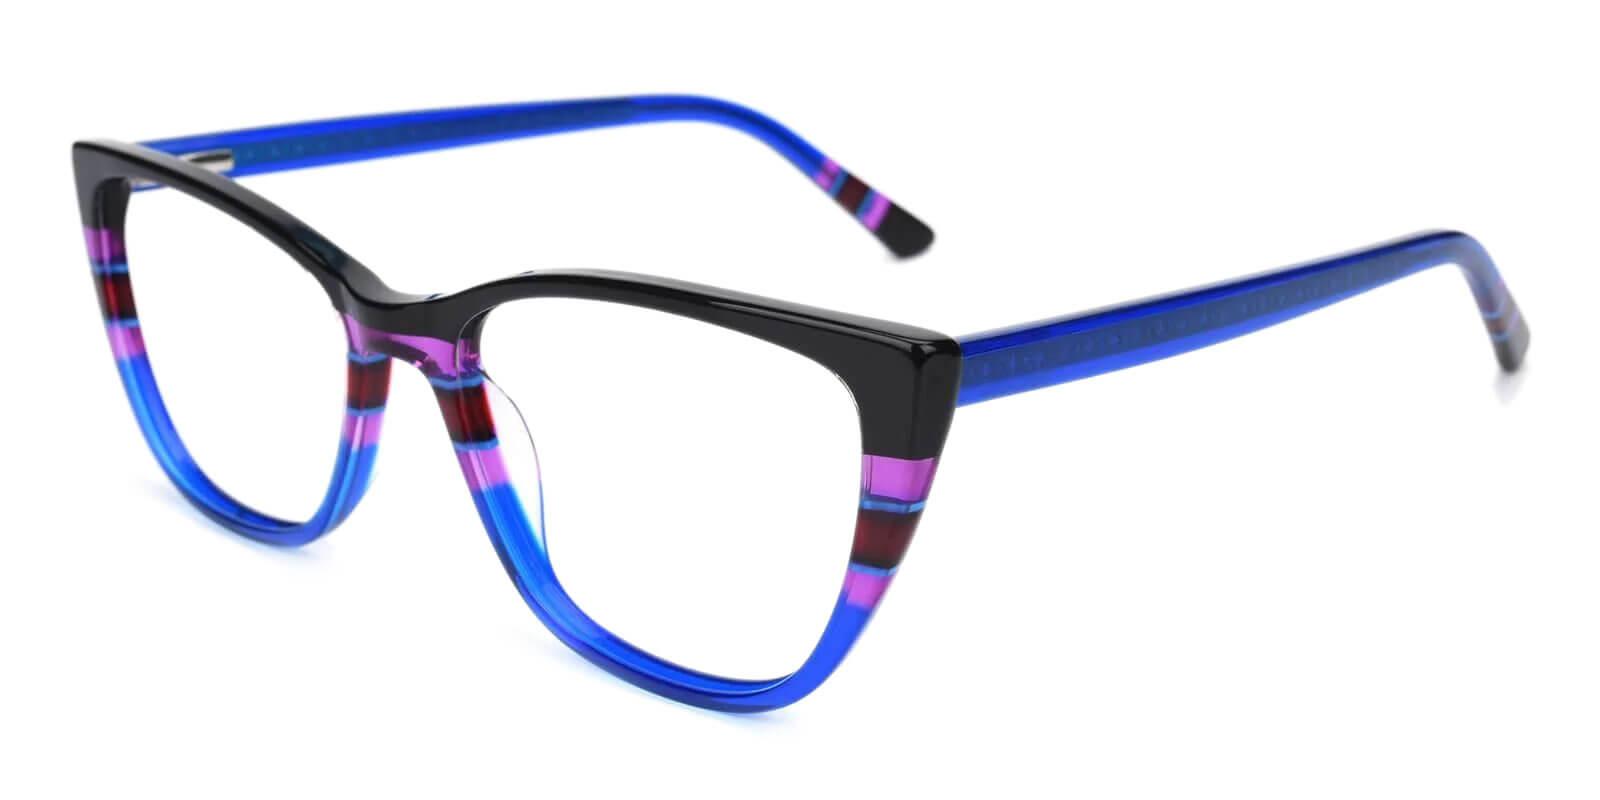 Prague Blue Acetate Eyeglasses , UniversalBridgeFit Frames from ABBE Glasses